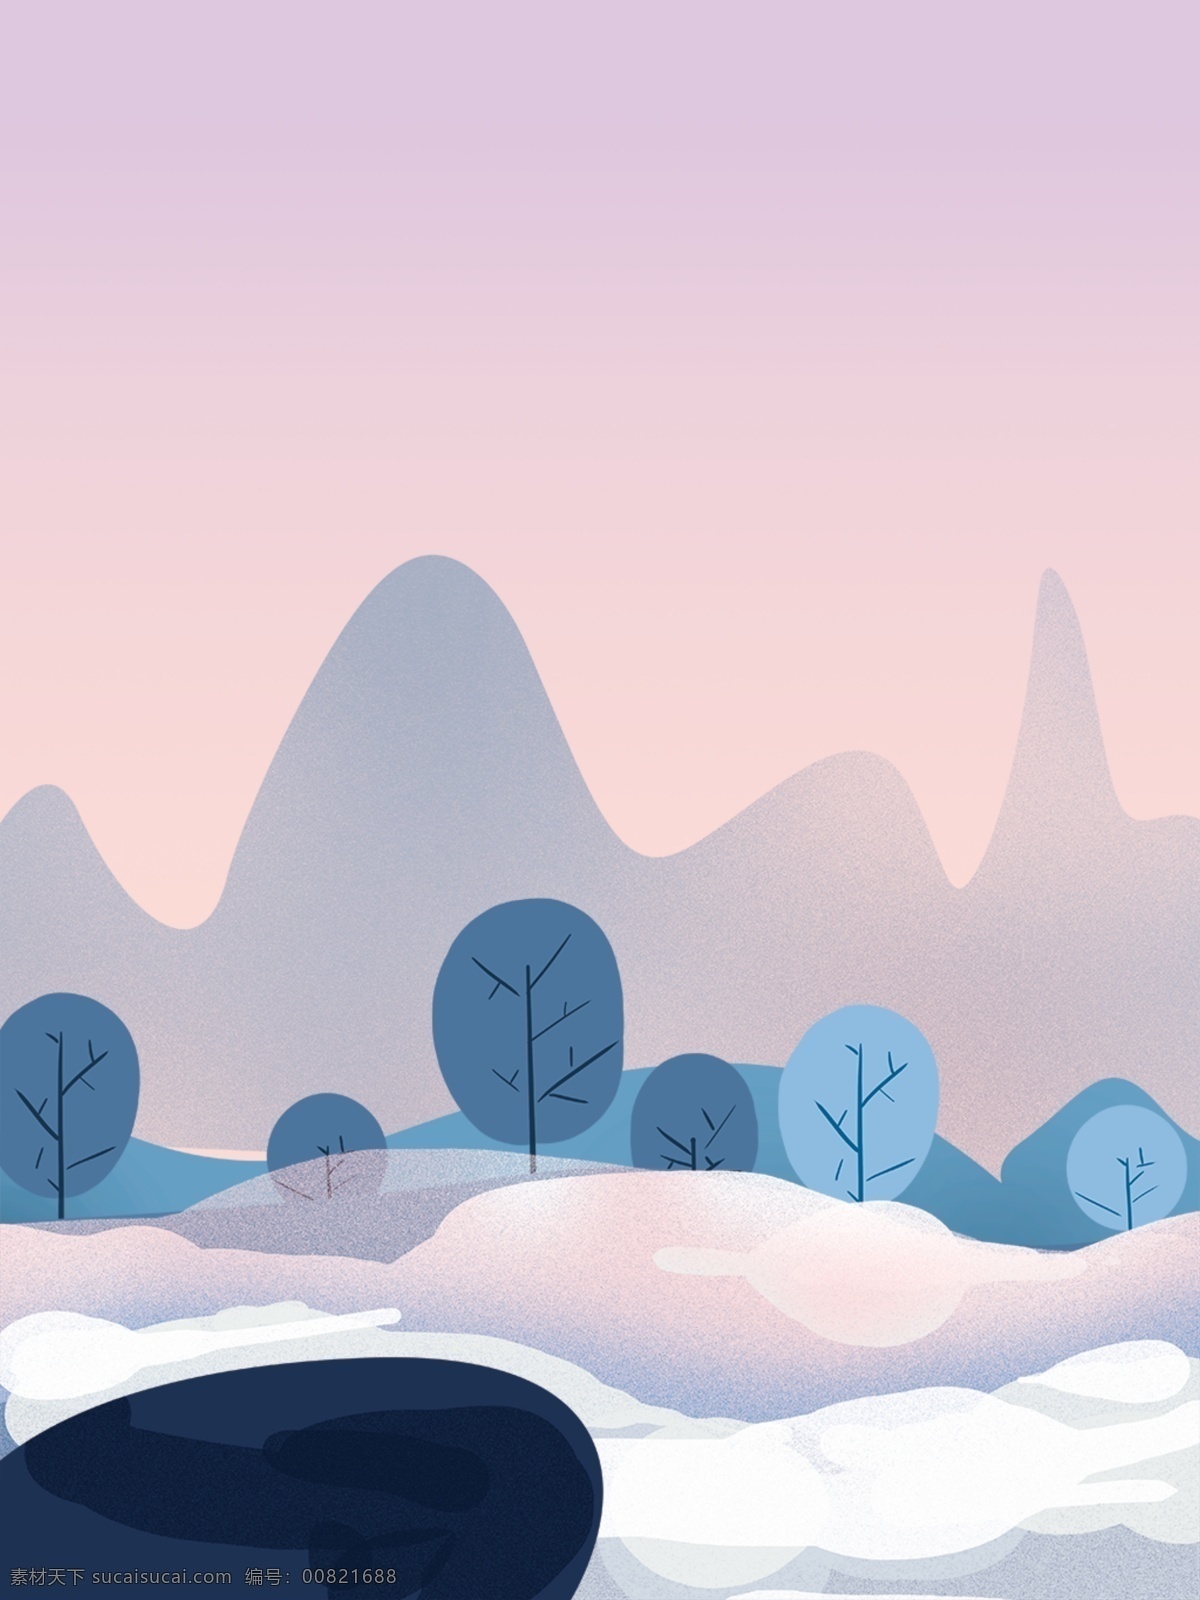 冬季 玩 雪 唯美 手绘 风景 背景 手绘风景背景 背景展板 彩色背景 背景设计 冬季玩雪 广告背景